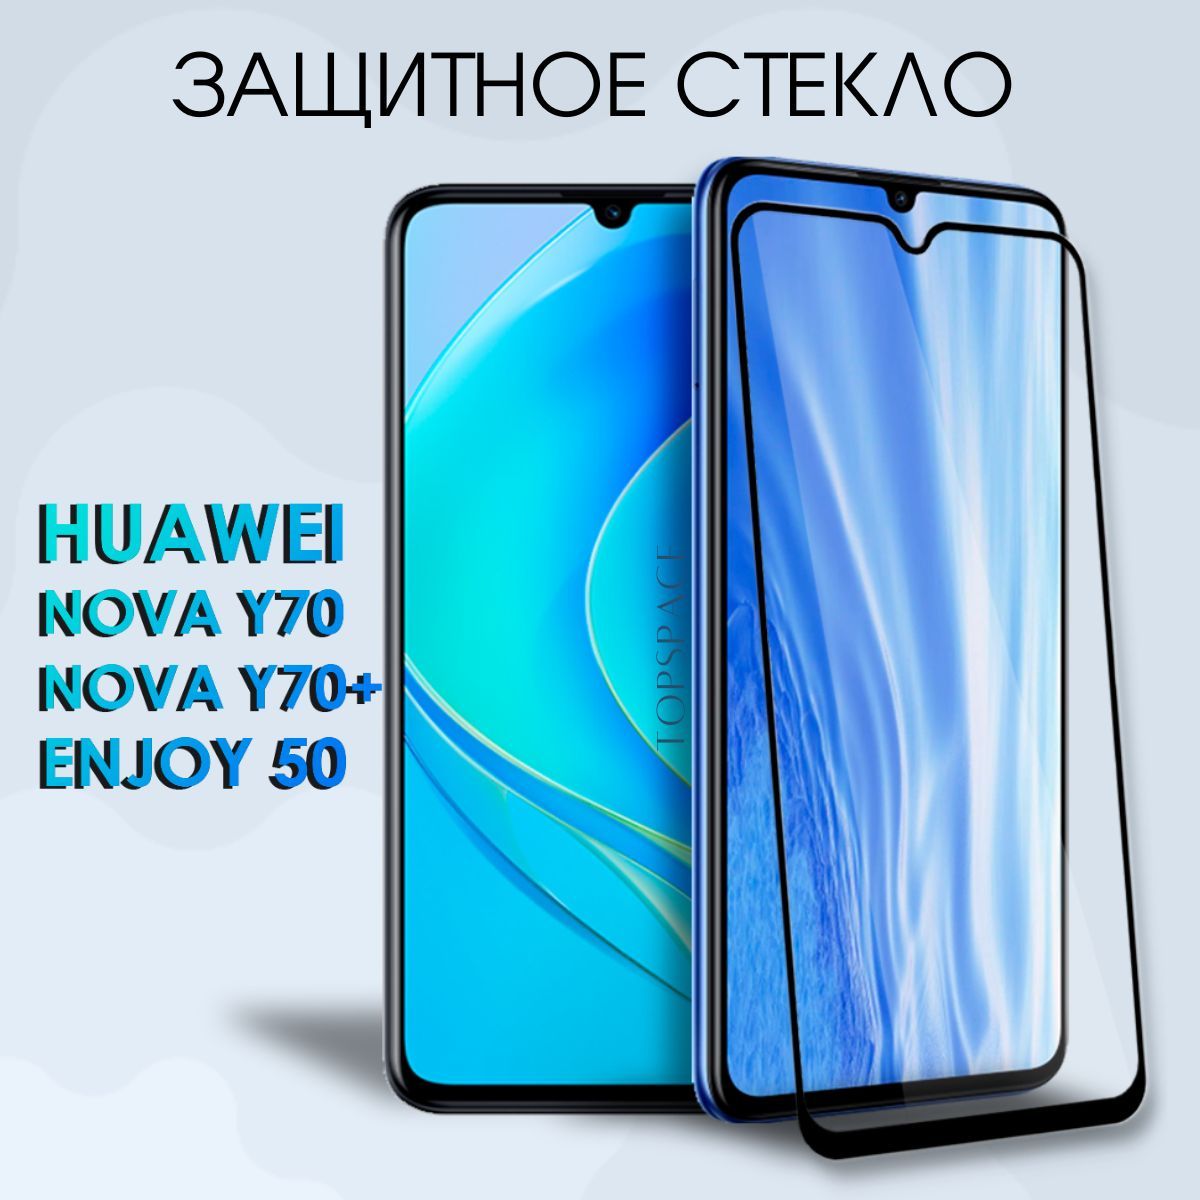 Телефон huawei nova 70. Реклама телефона Huawei Nova y 70 Plus.